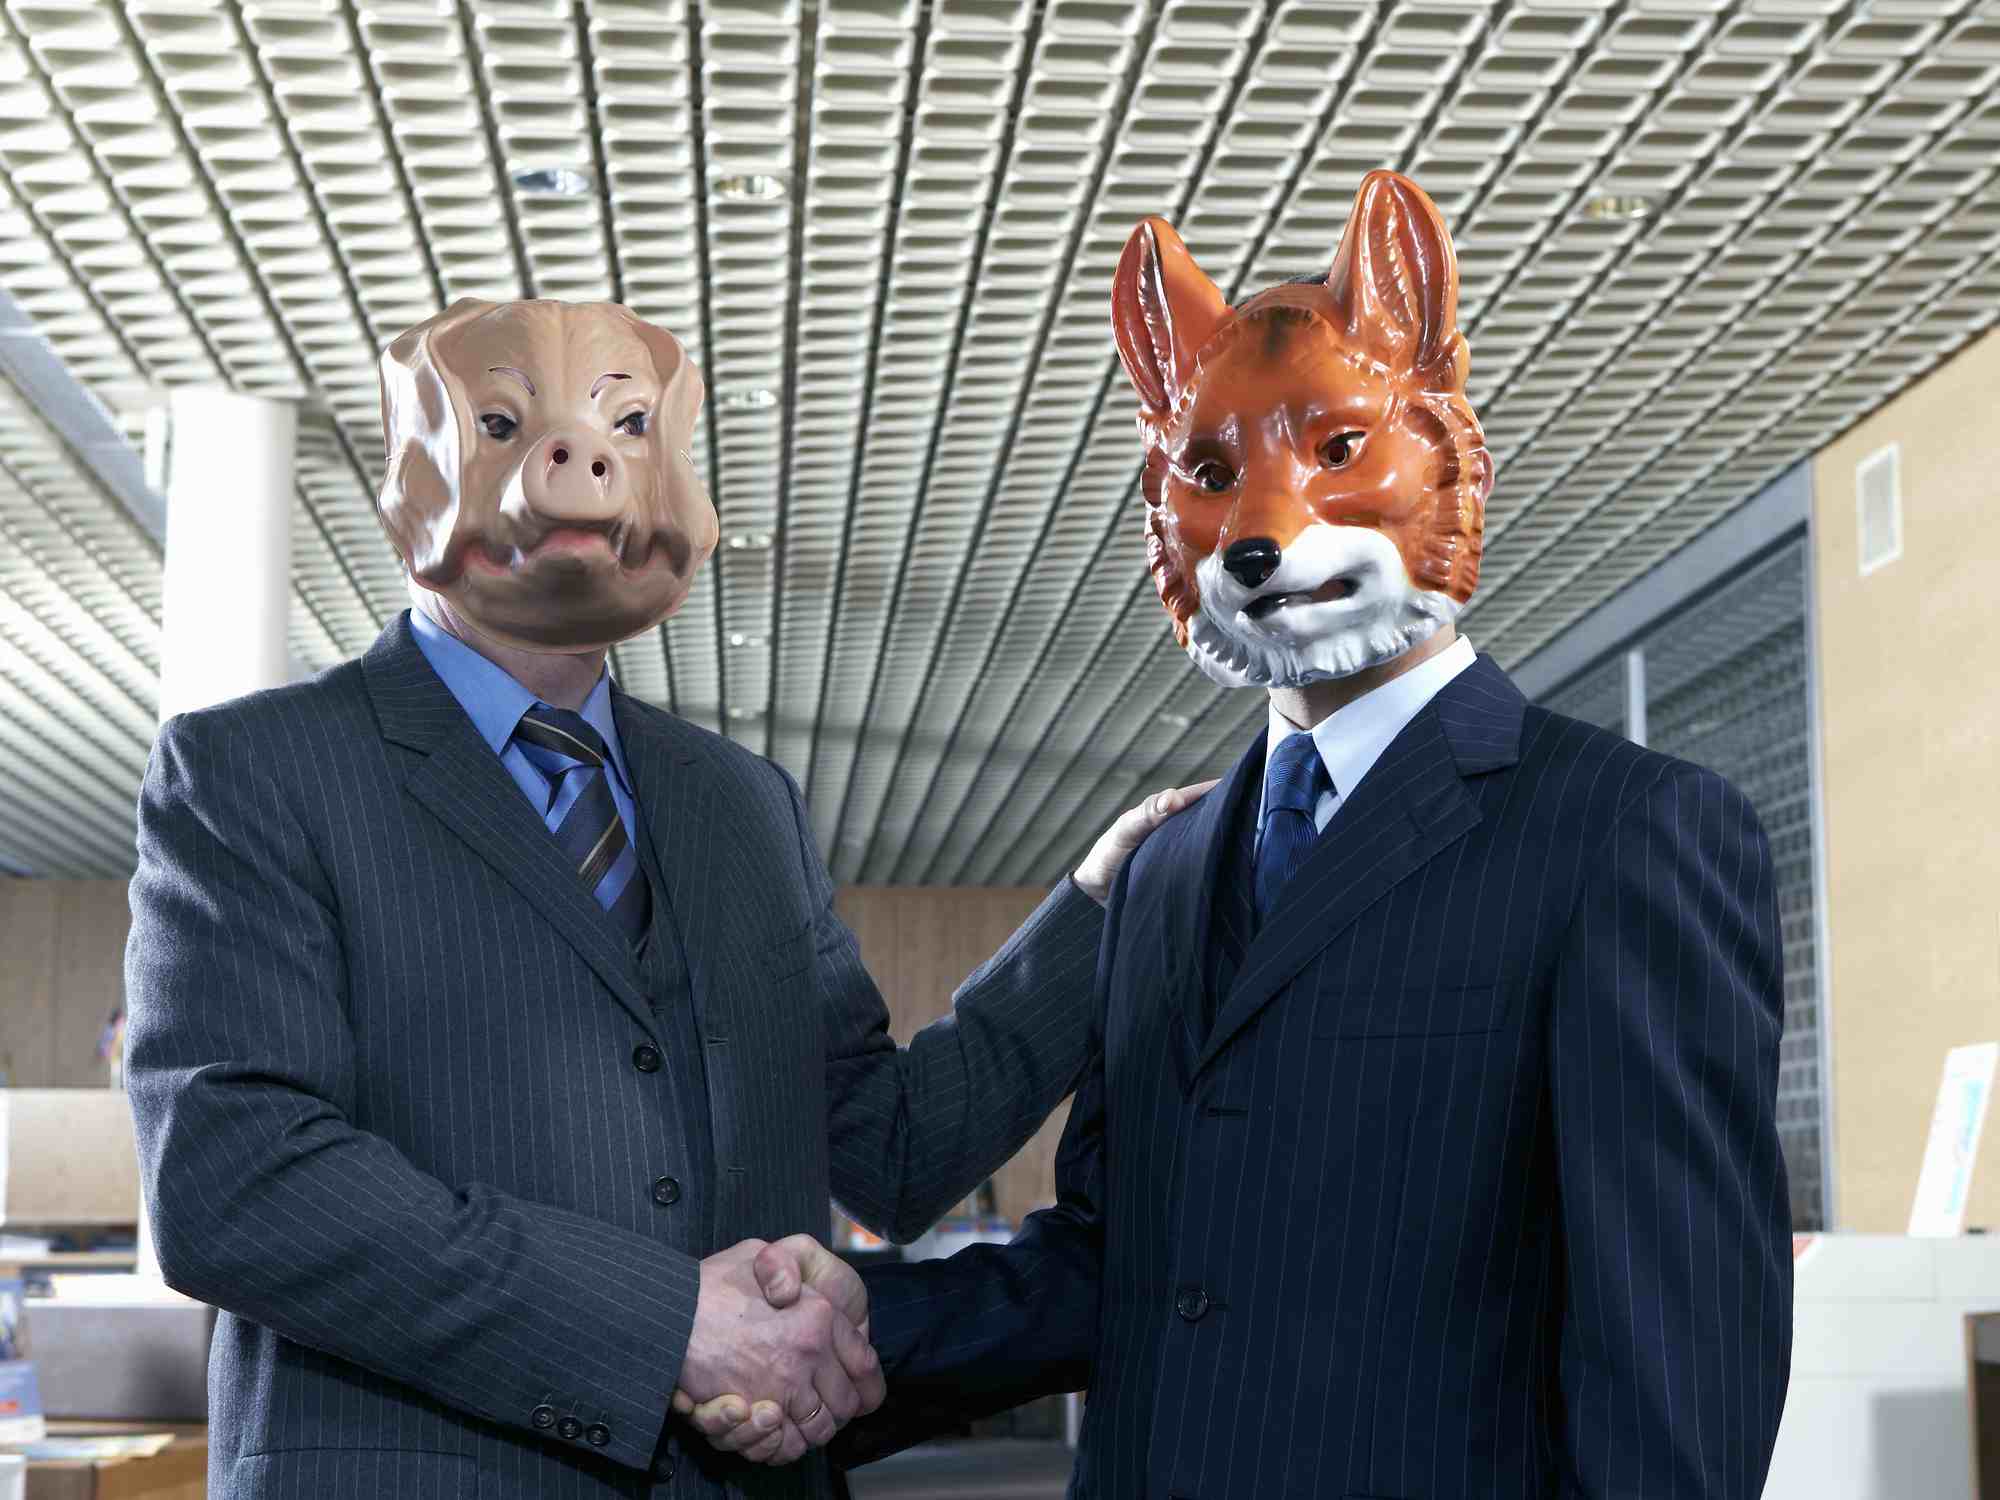 Empresários apertando as mãos com máscaras de animais